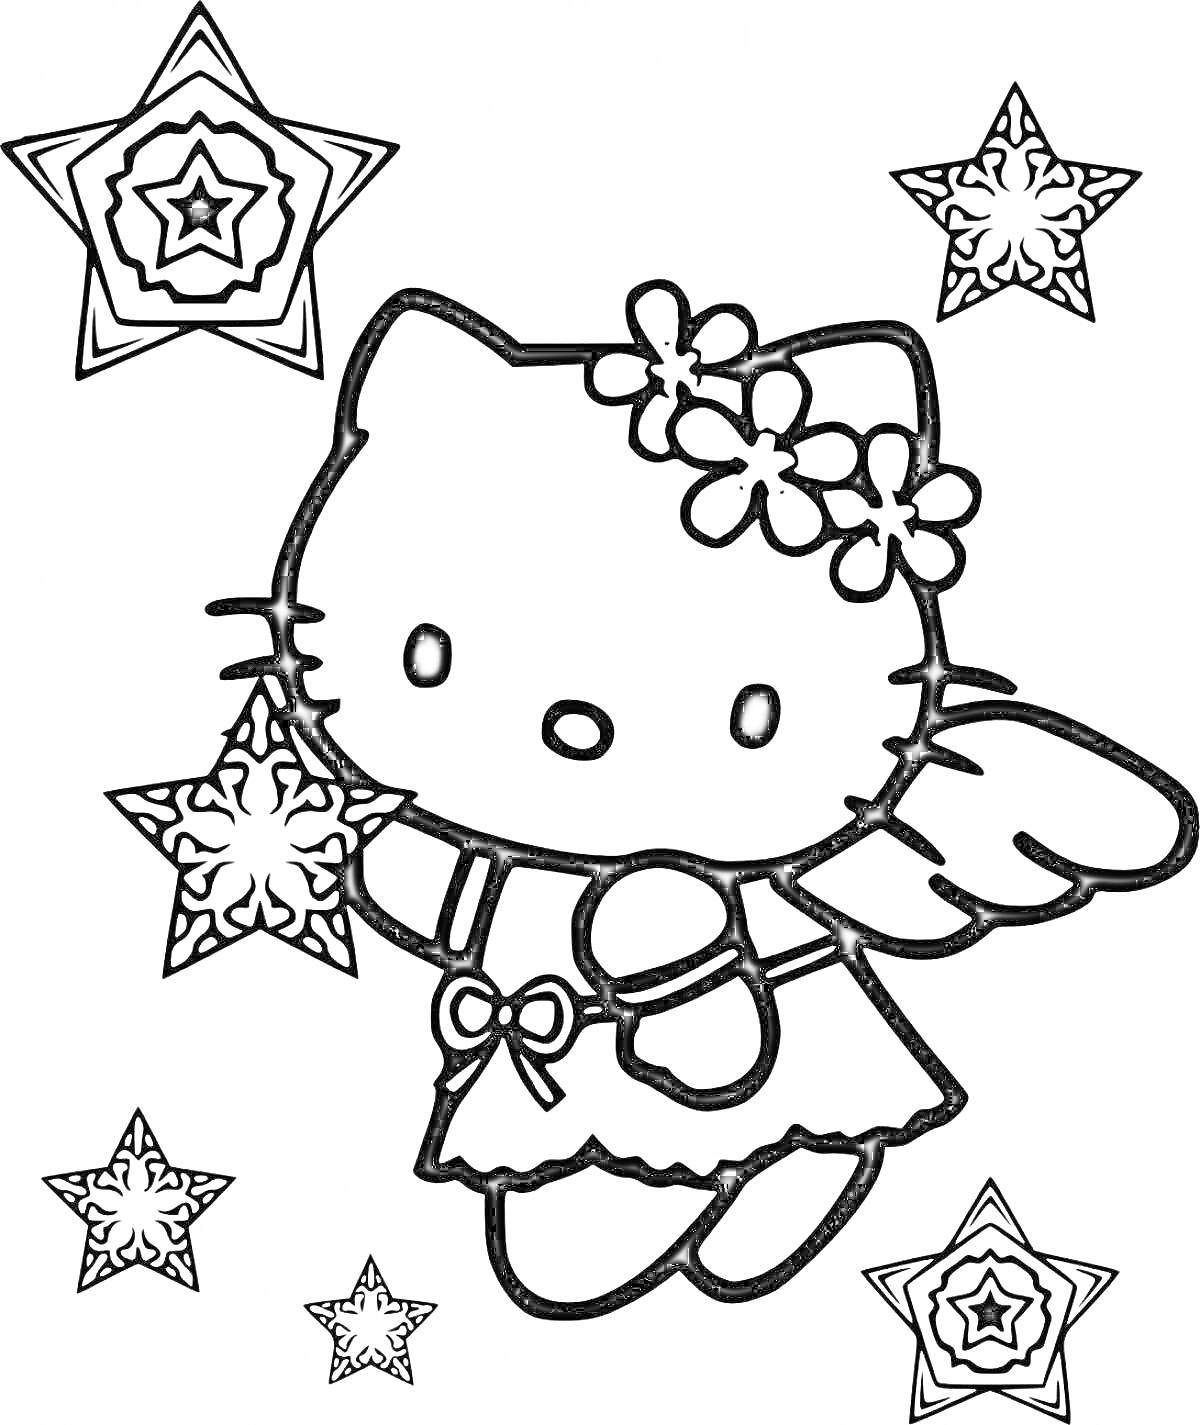 Раскраска Хелло Китти с цветами на голове и крыльями, держащая новогоднюю снежинку-звезду, окруженная пятью звездами-снежинками